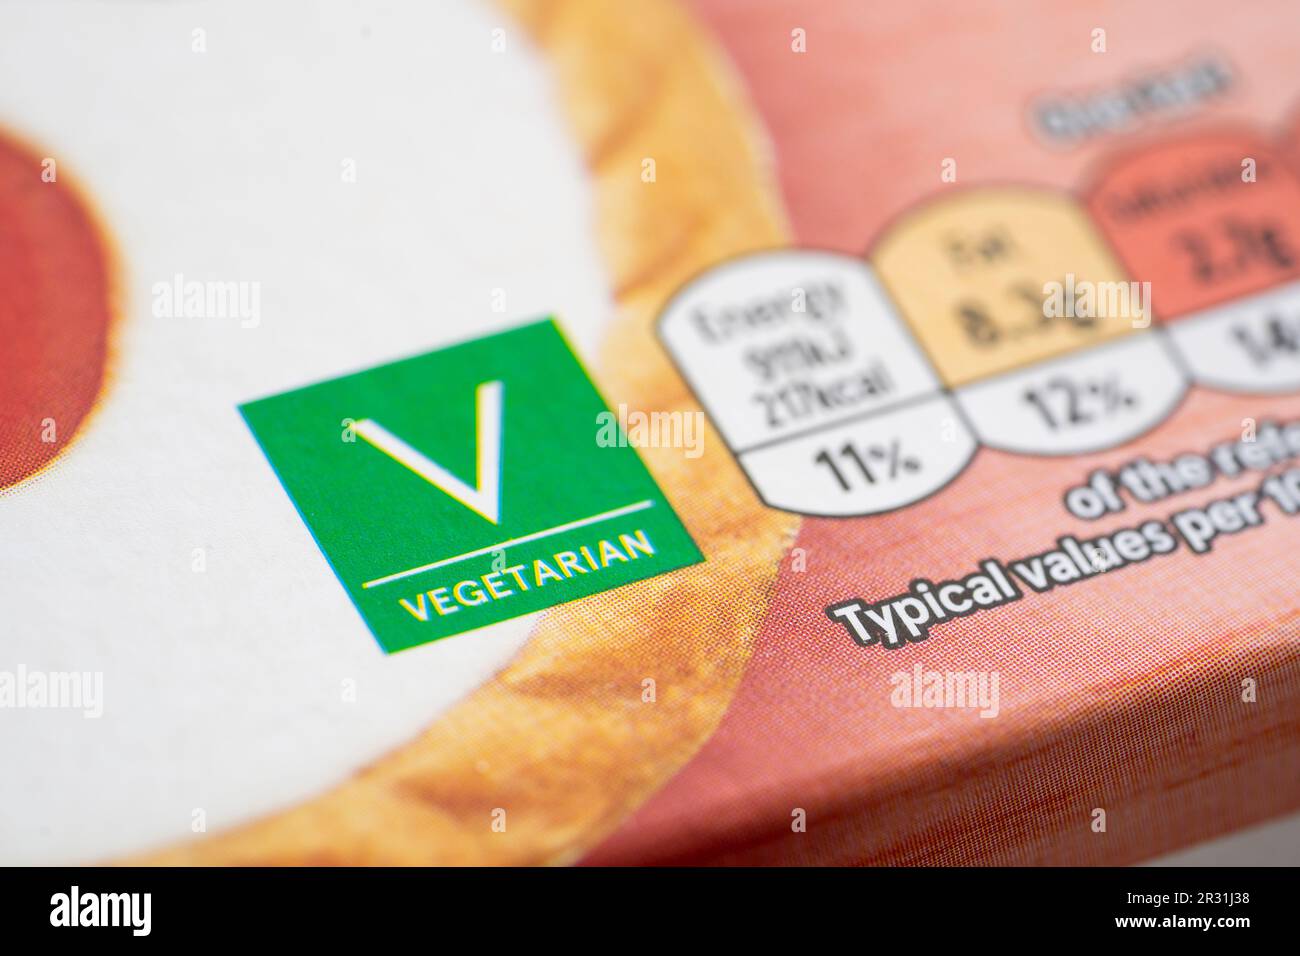 Etichetta vegetariana sul davanti della confezione del cibo sulle crostate di bakewell in ciliegio del marchio Tesco, Inghilterra. Concetto: Vegetarianismo, dieta vegetariana, etichettatura degli alimenti Foto Stock